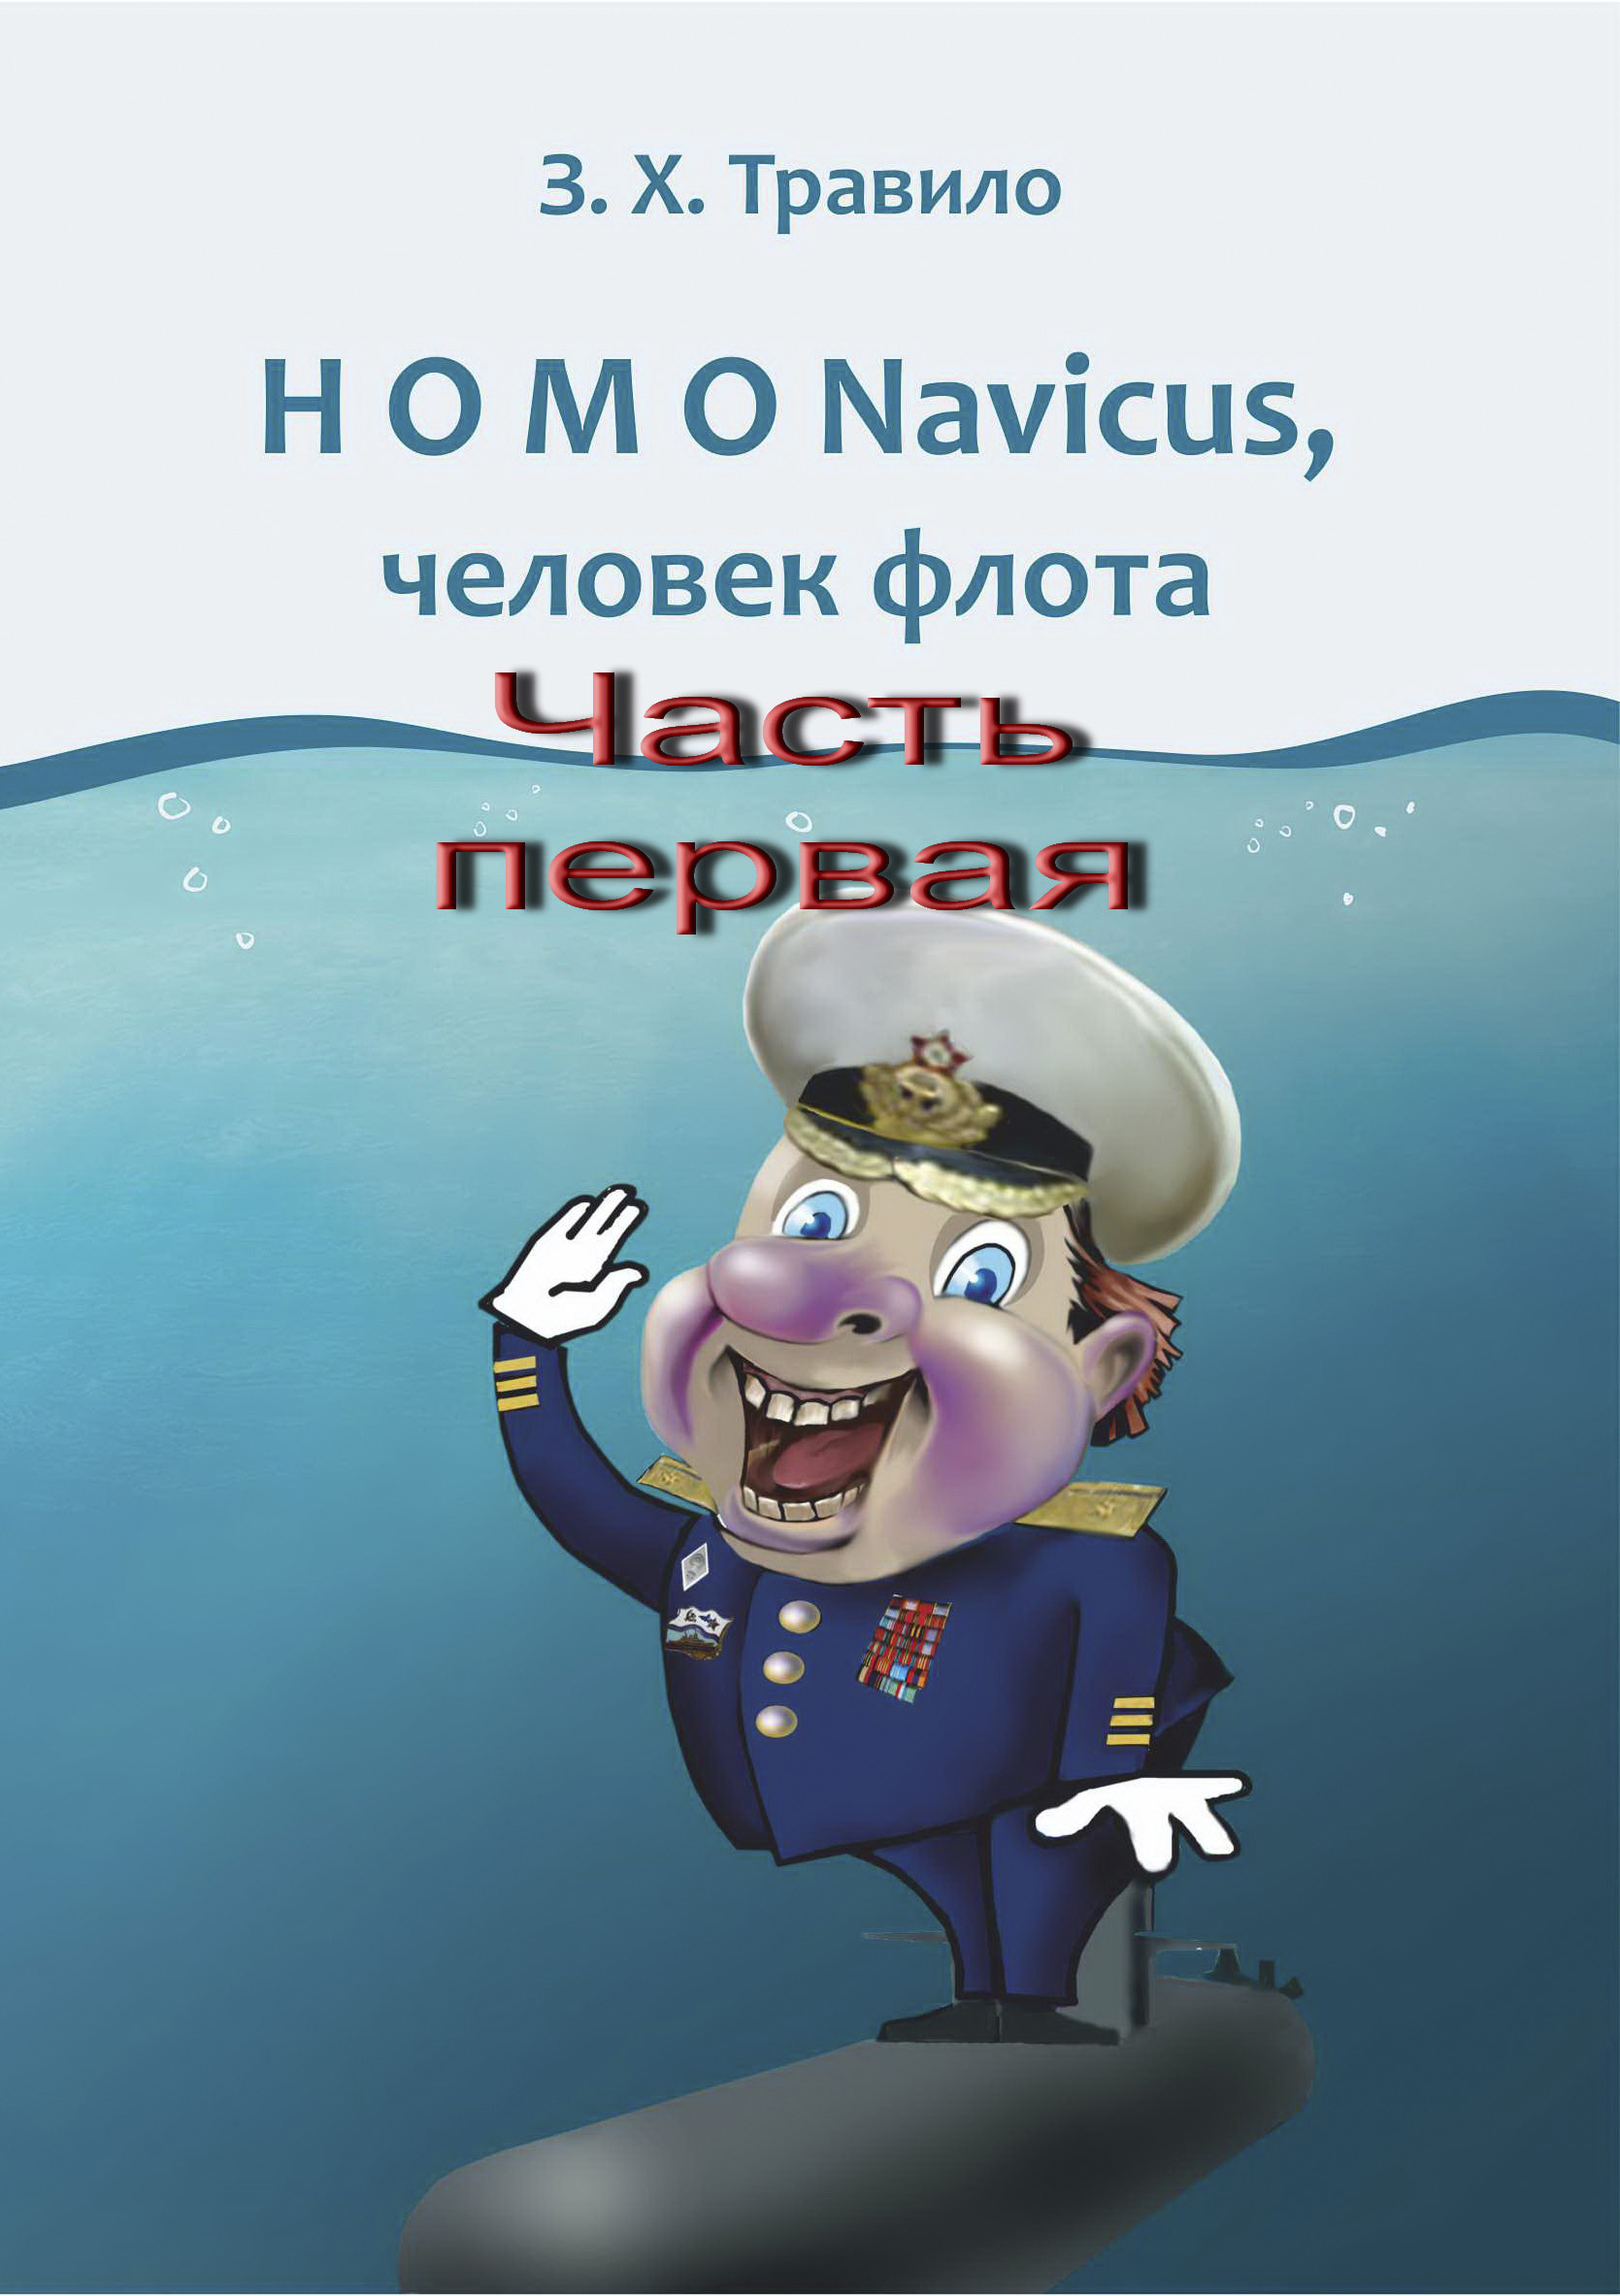 HOMO Navicus,человек флота. Часть первая